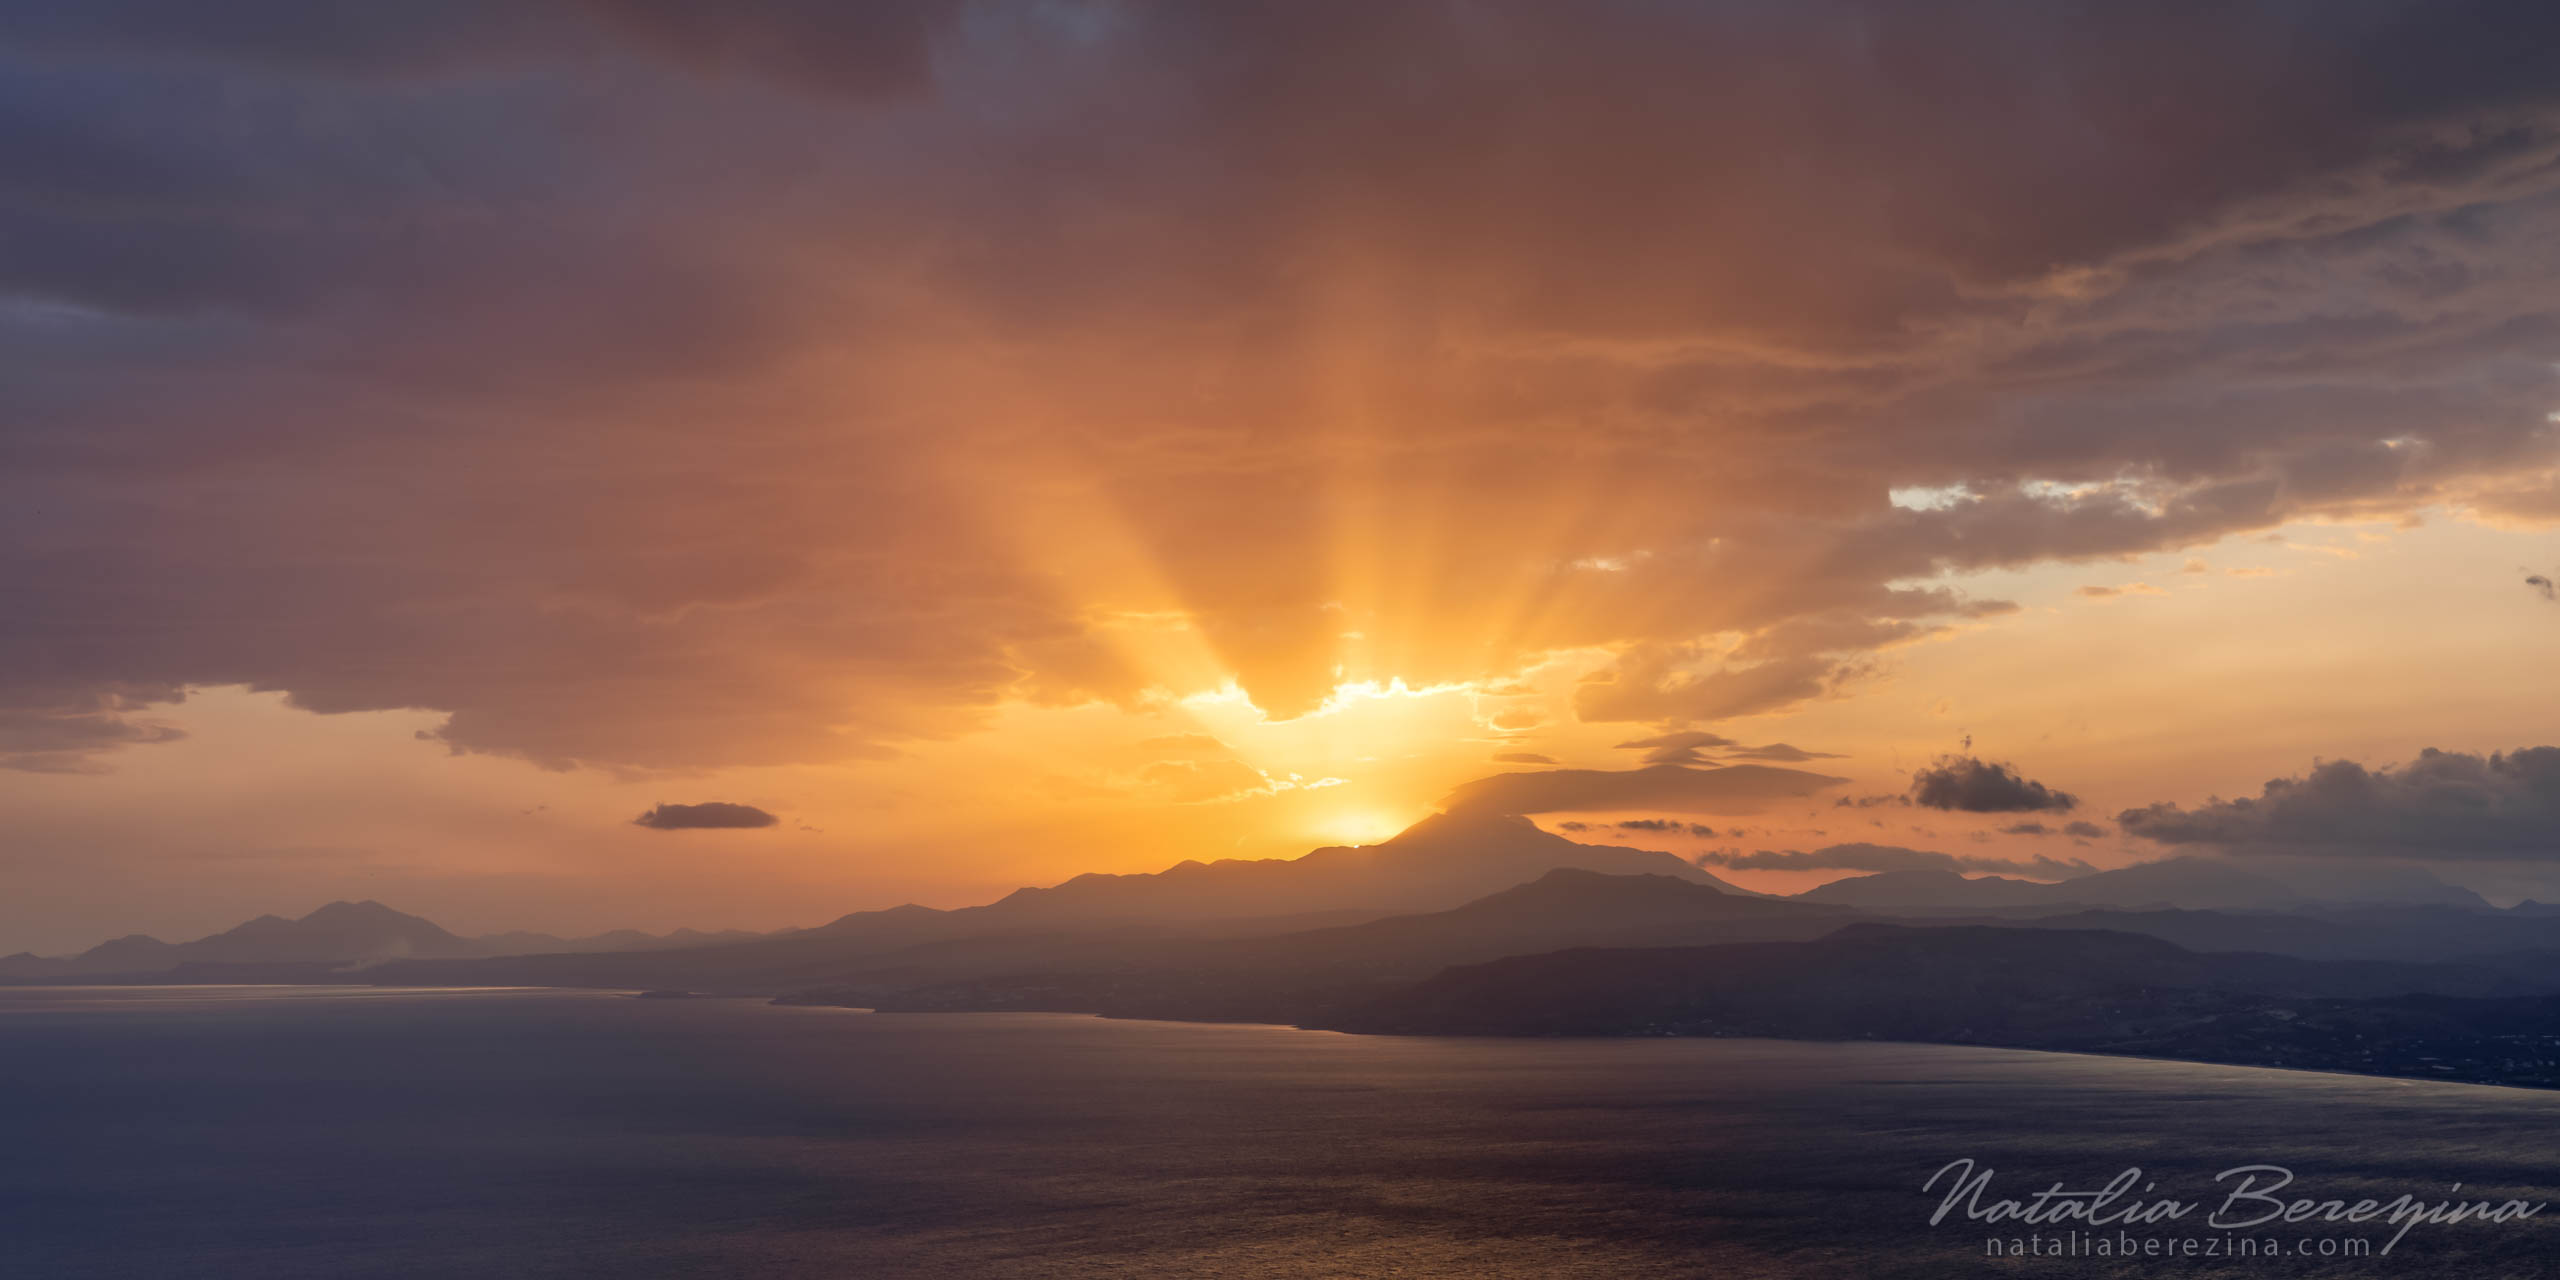 Greece, Crete, landscape, cloud, sea, sunrise, sunlight, skyline, orange, 2x1 CR1-NB7B6A4076-P - Crete, Greece - Natalia Berezina Photography